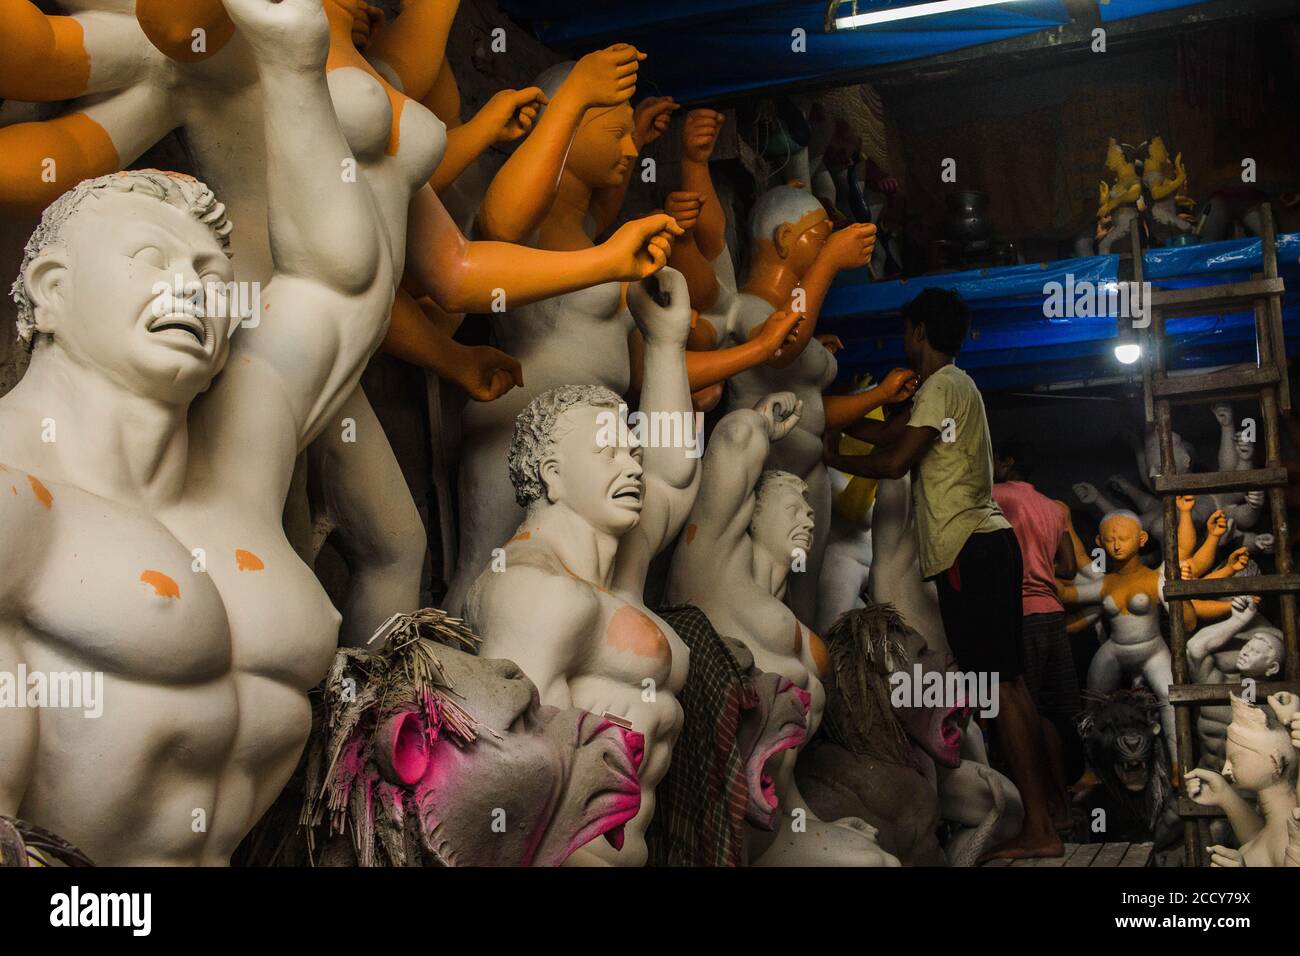 Sculptors making idol Of Goddess Durga at kolkata Stock Photo